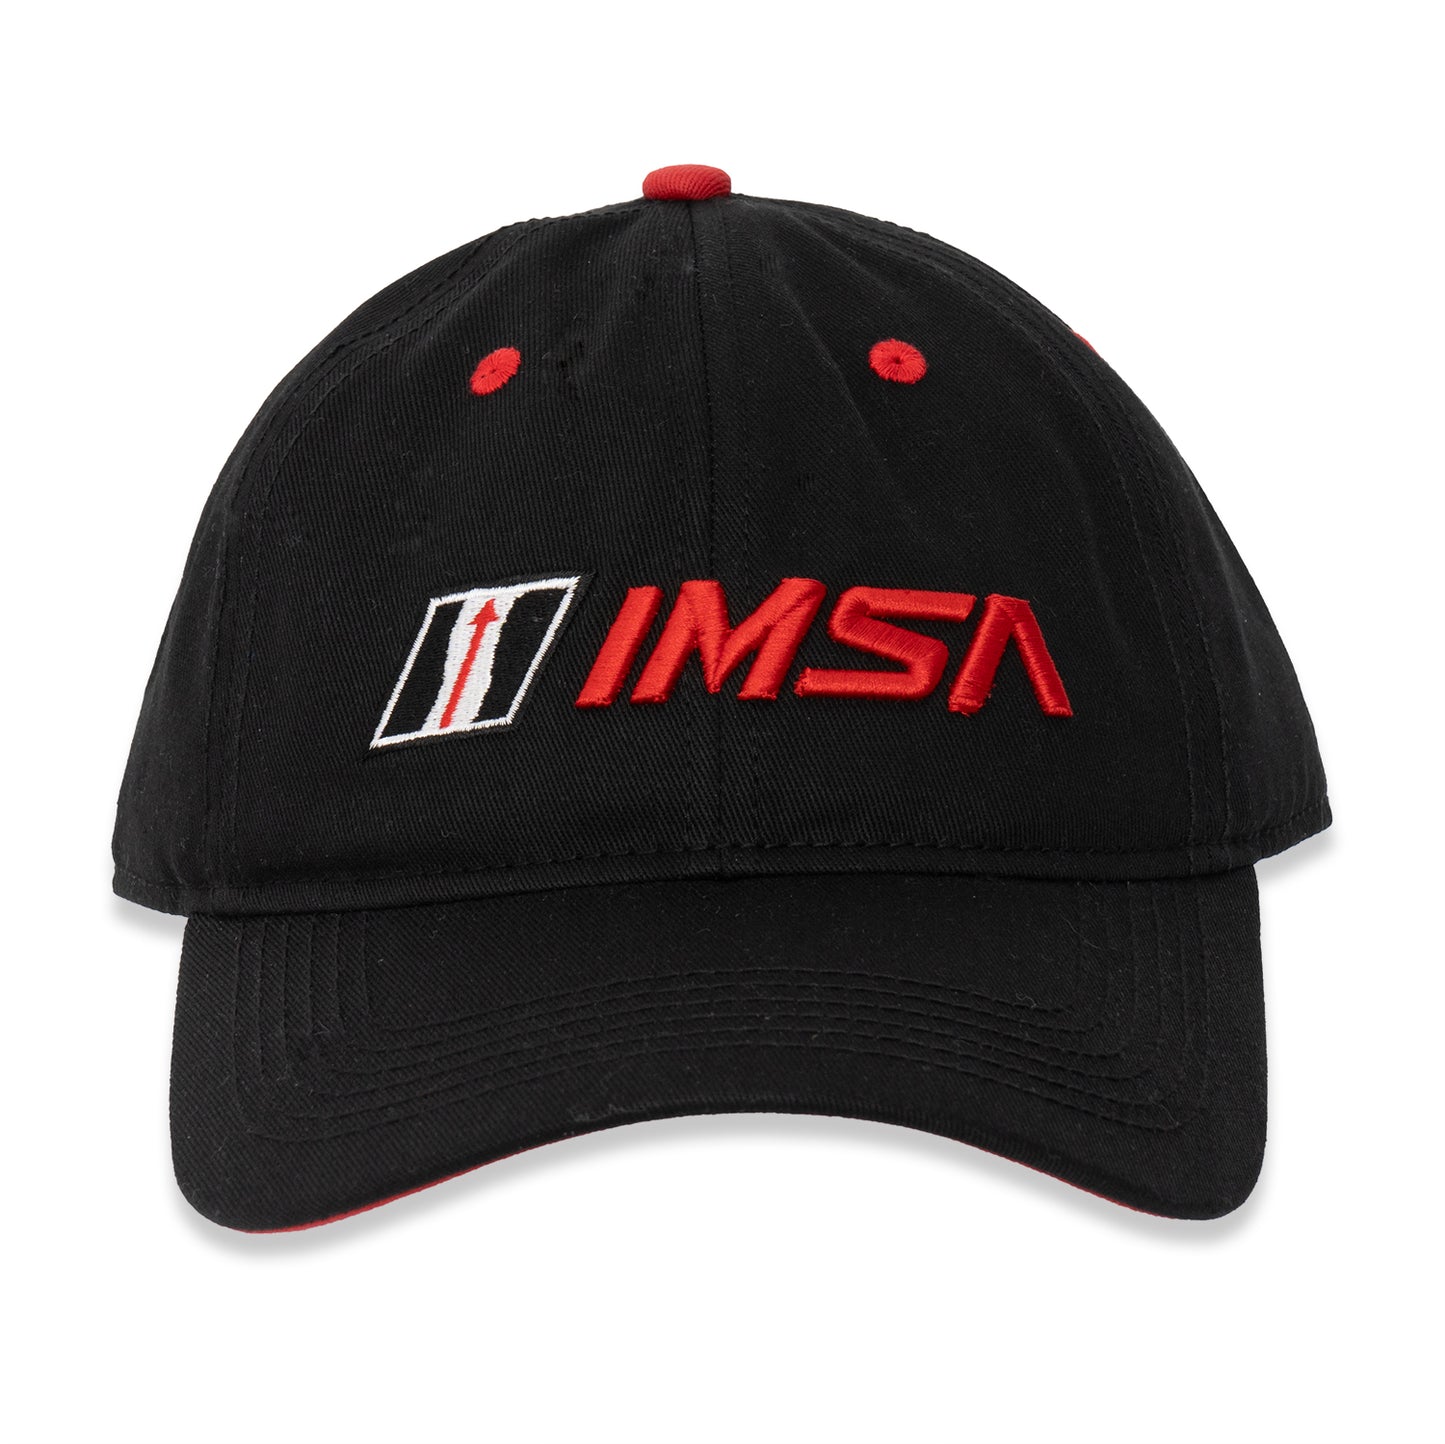 IMSA Dad Hat - Black